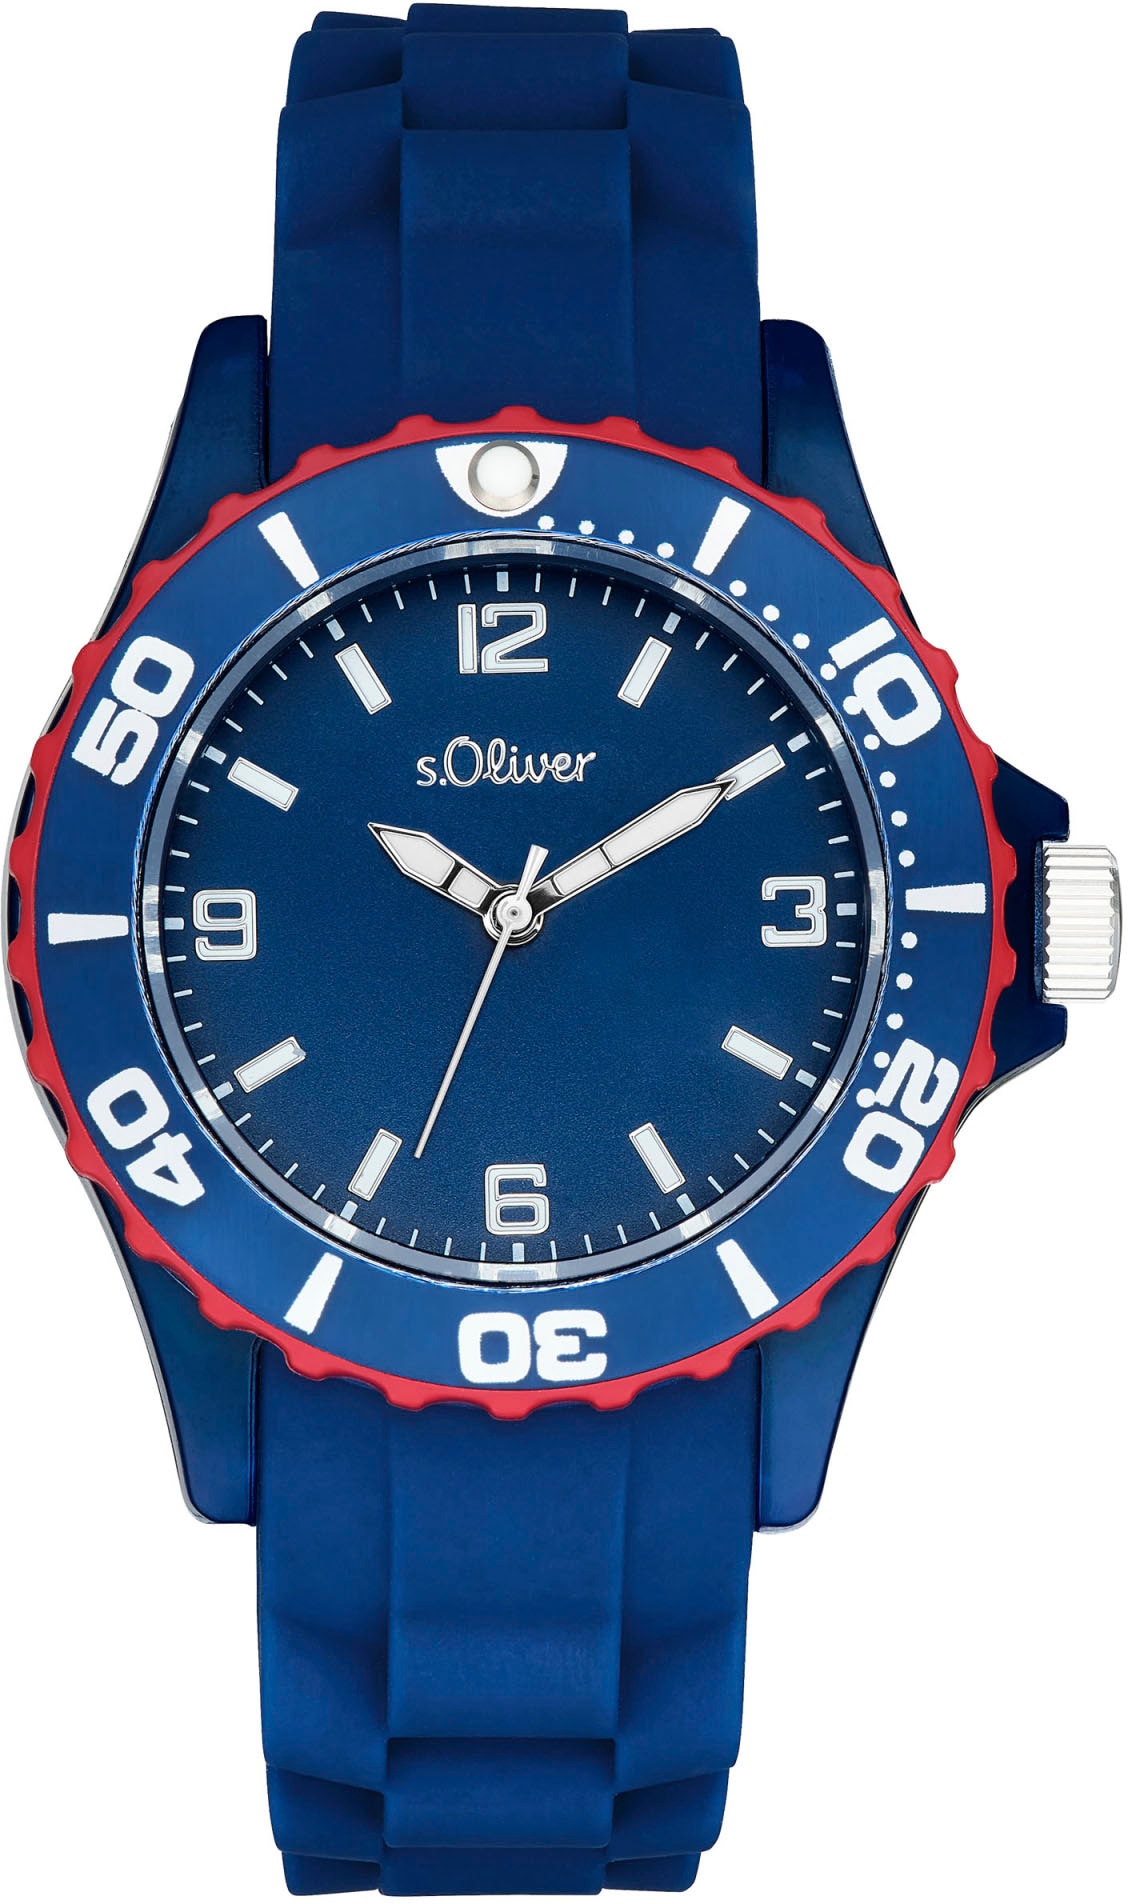 s.Oliver Quarzuhr »2036495«, Armbanduhr, Kinderuhr, ideal auch als Geschenk